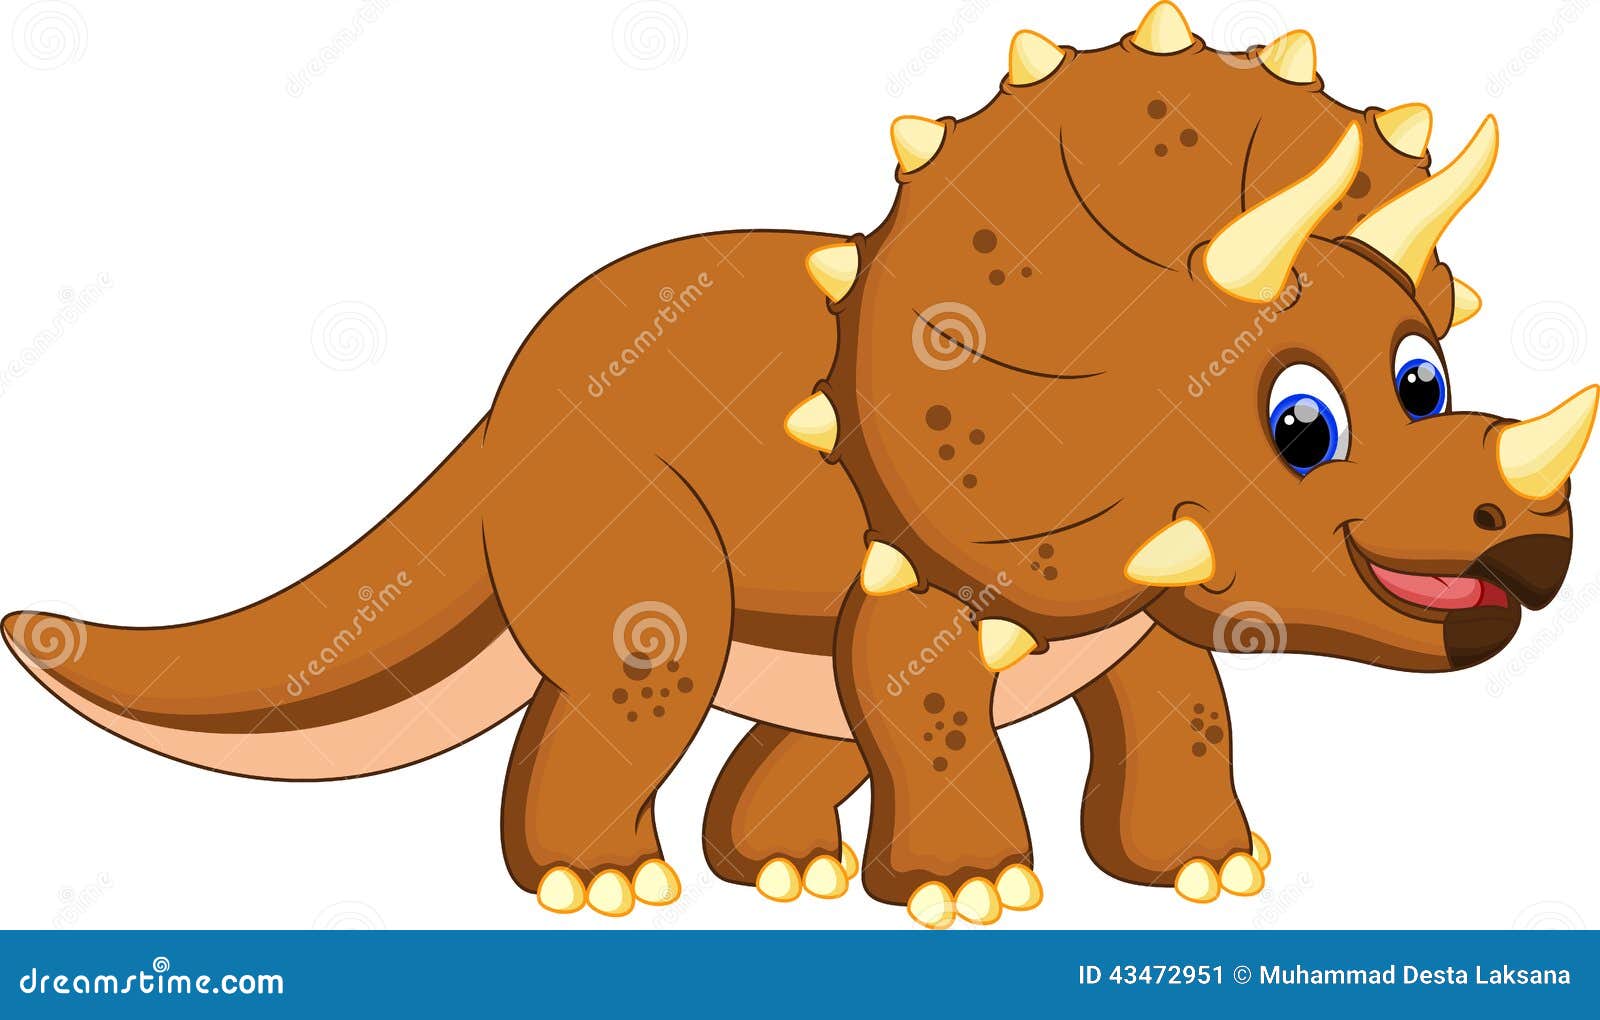 Мультяшный Динозаврик Трицератопс